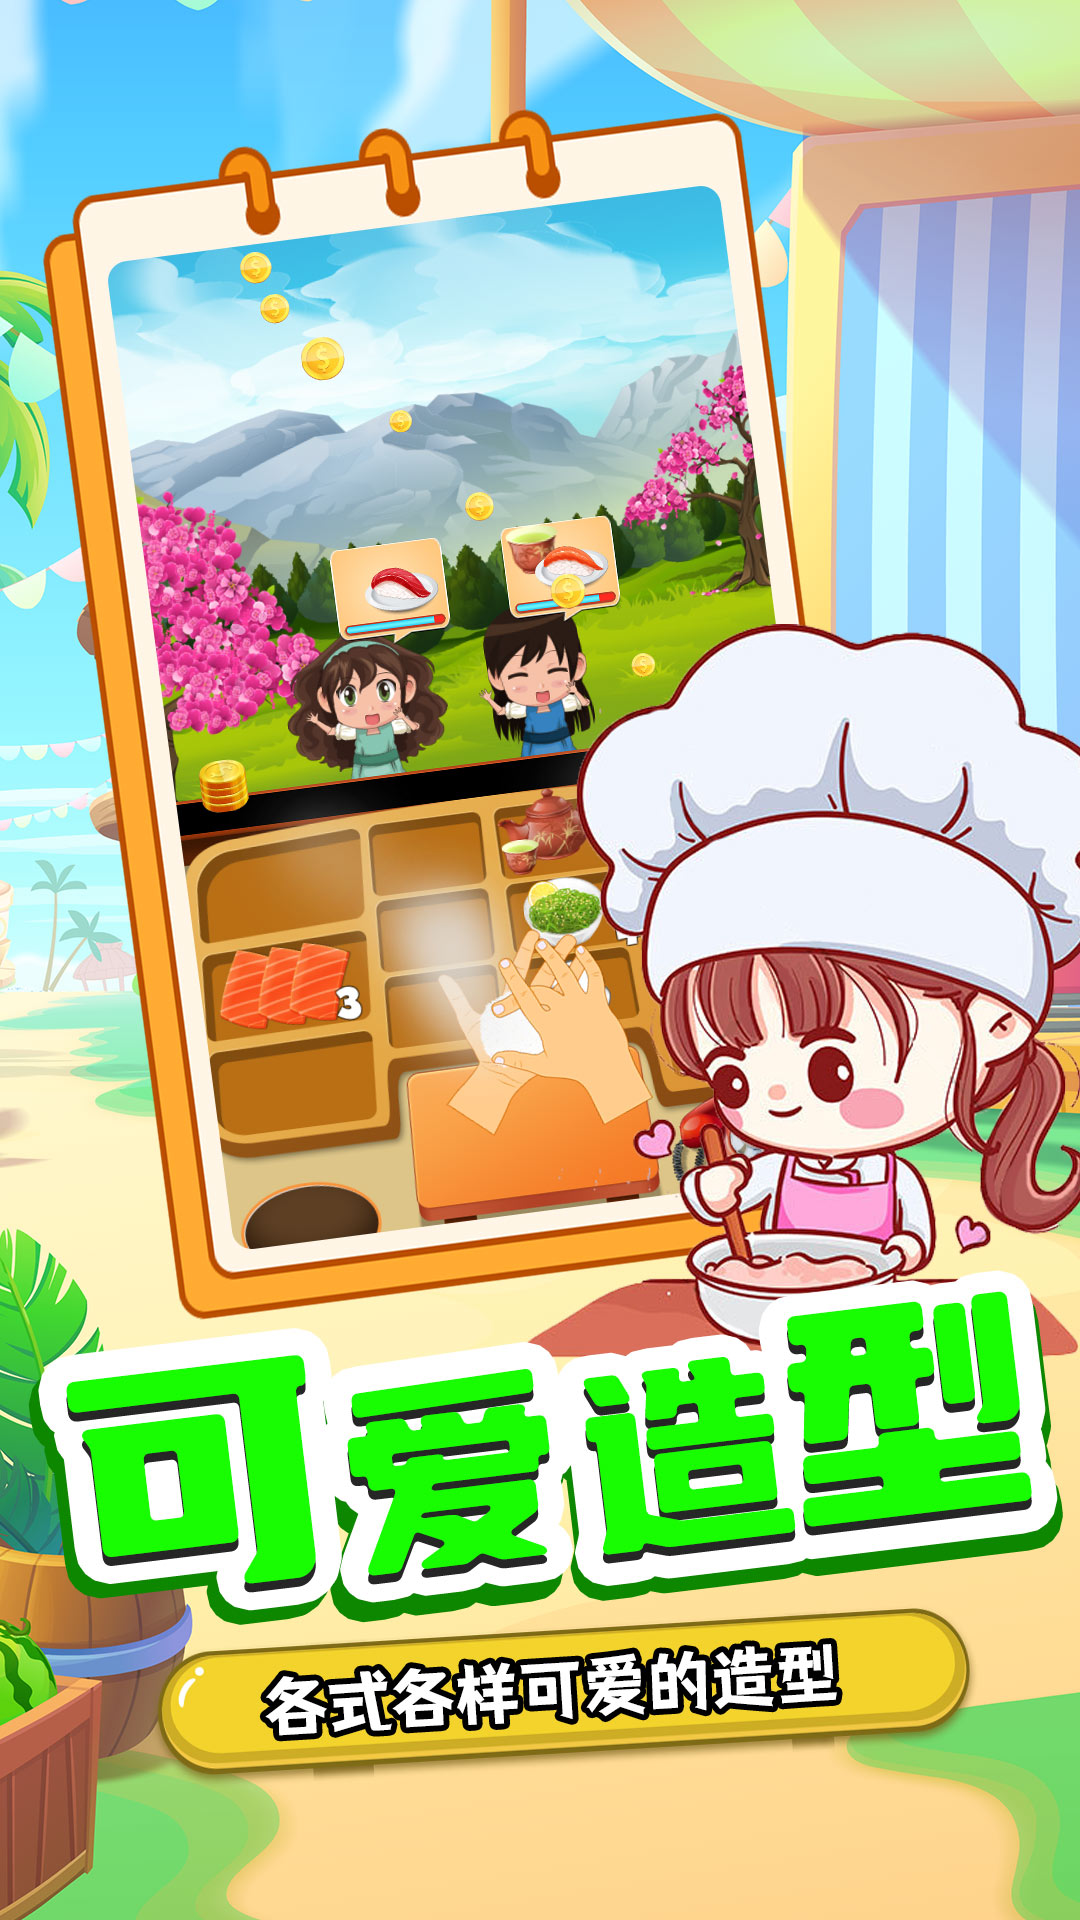 宝宝寿司料理厨房游戏安卓版截图3: